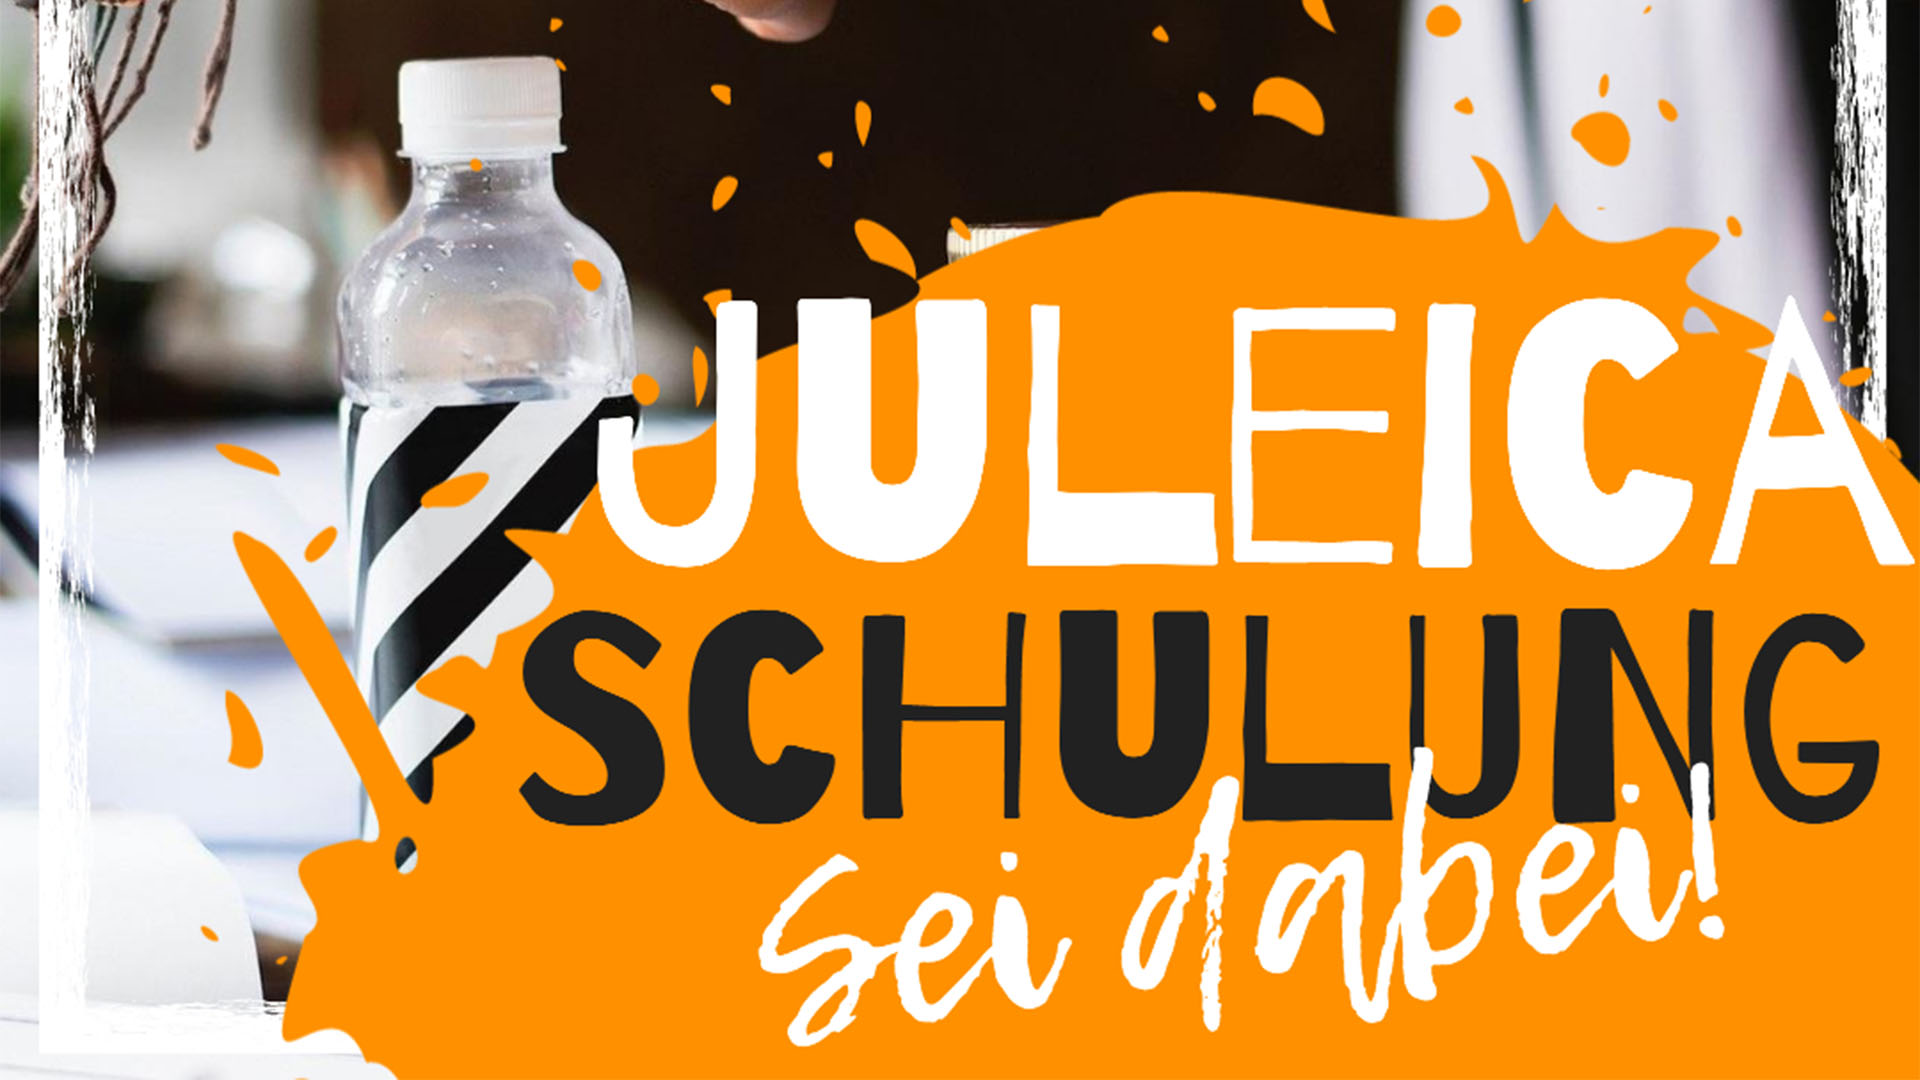 Plakat in schwarz-weiß und orange mit der Aufschrift Juleica Schulung sei dabei!